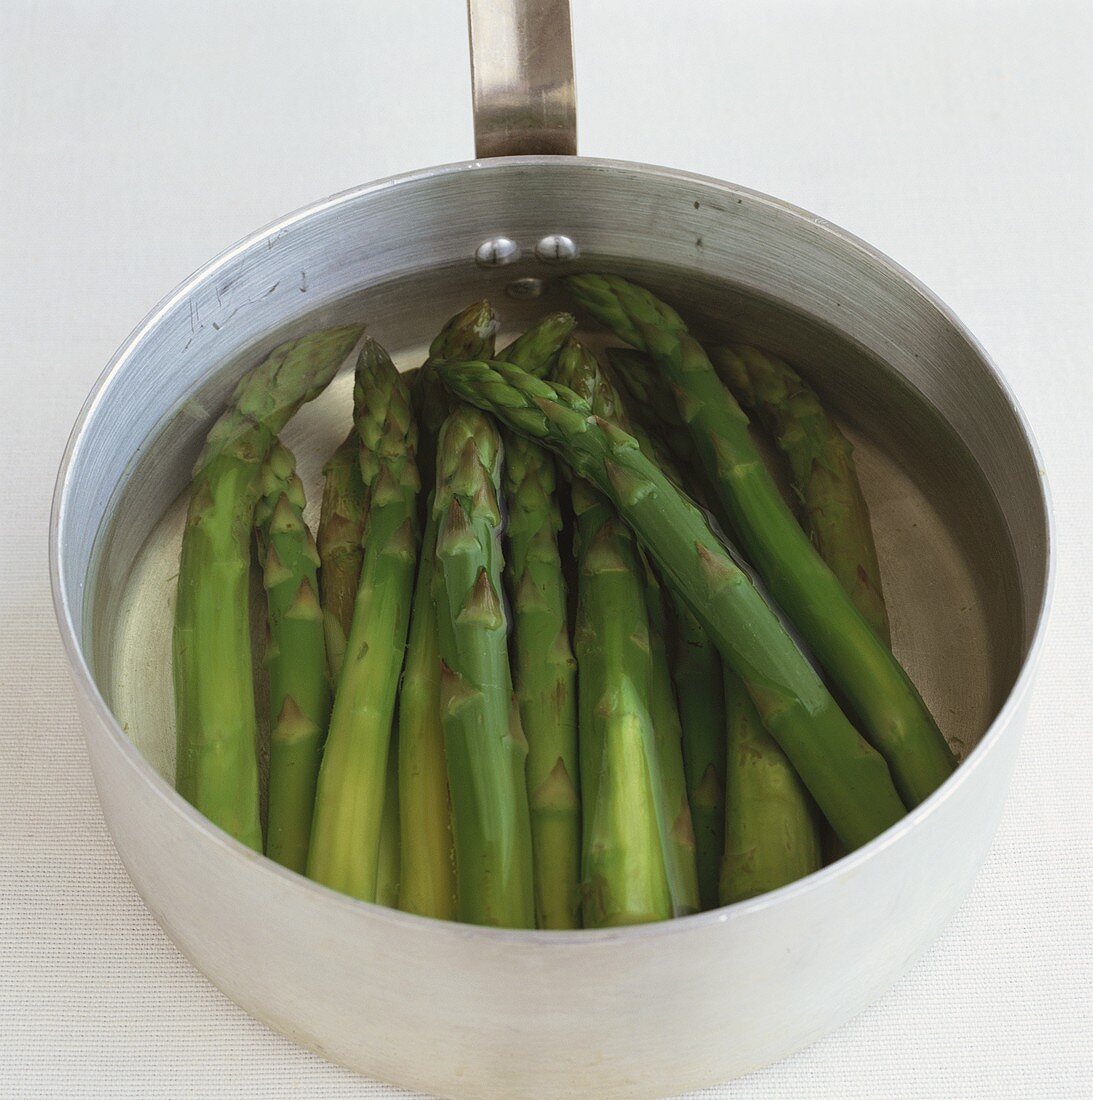 Green asparagus in a pan